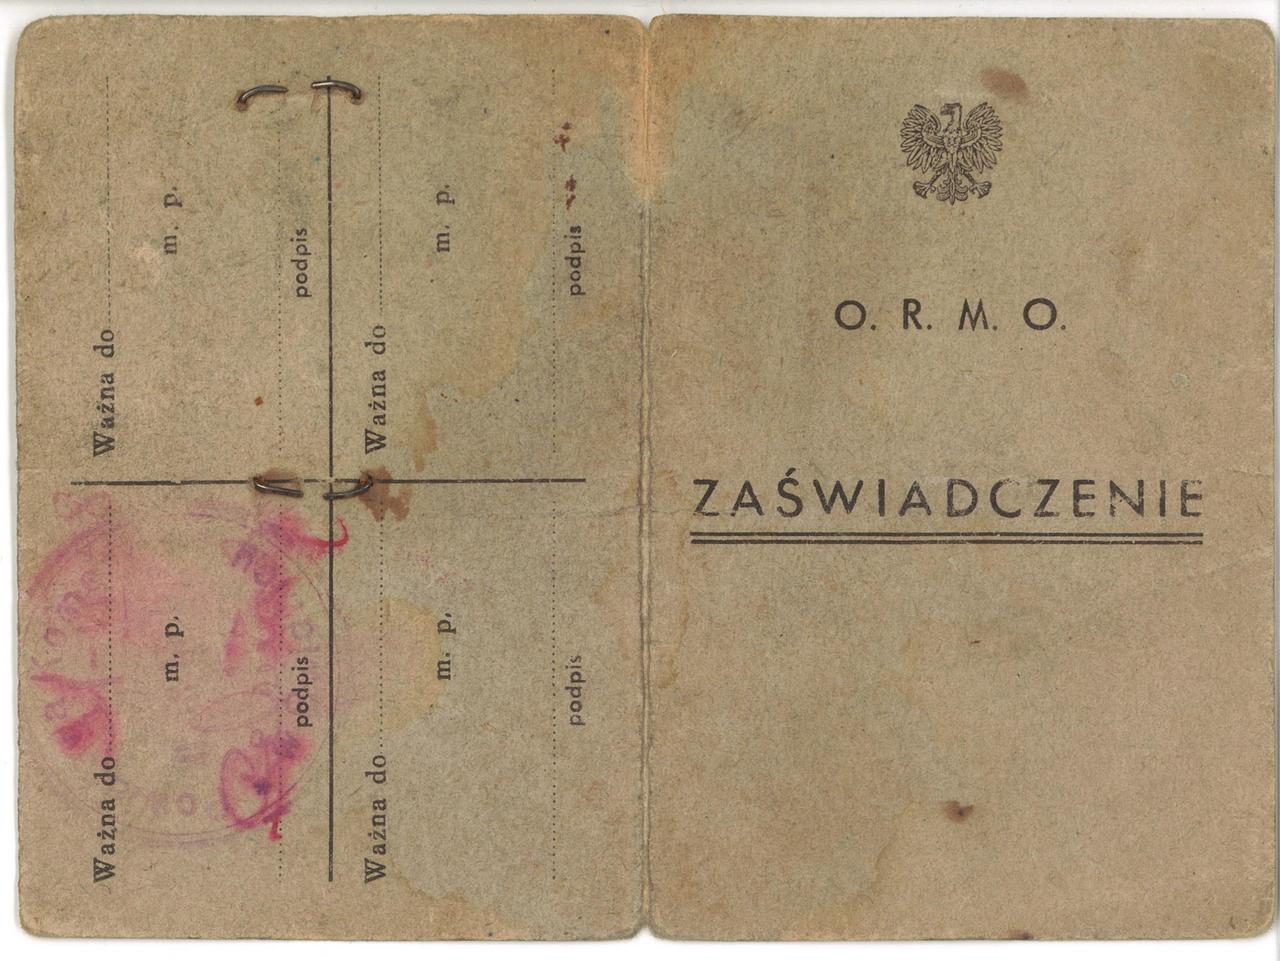 261. Dokument – Zaświadczenie ORMO numer 154 F, Jaworzyna Śląska, 1947